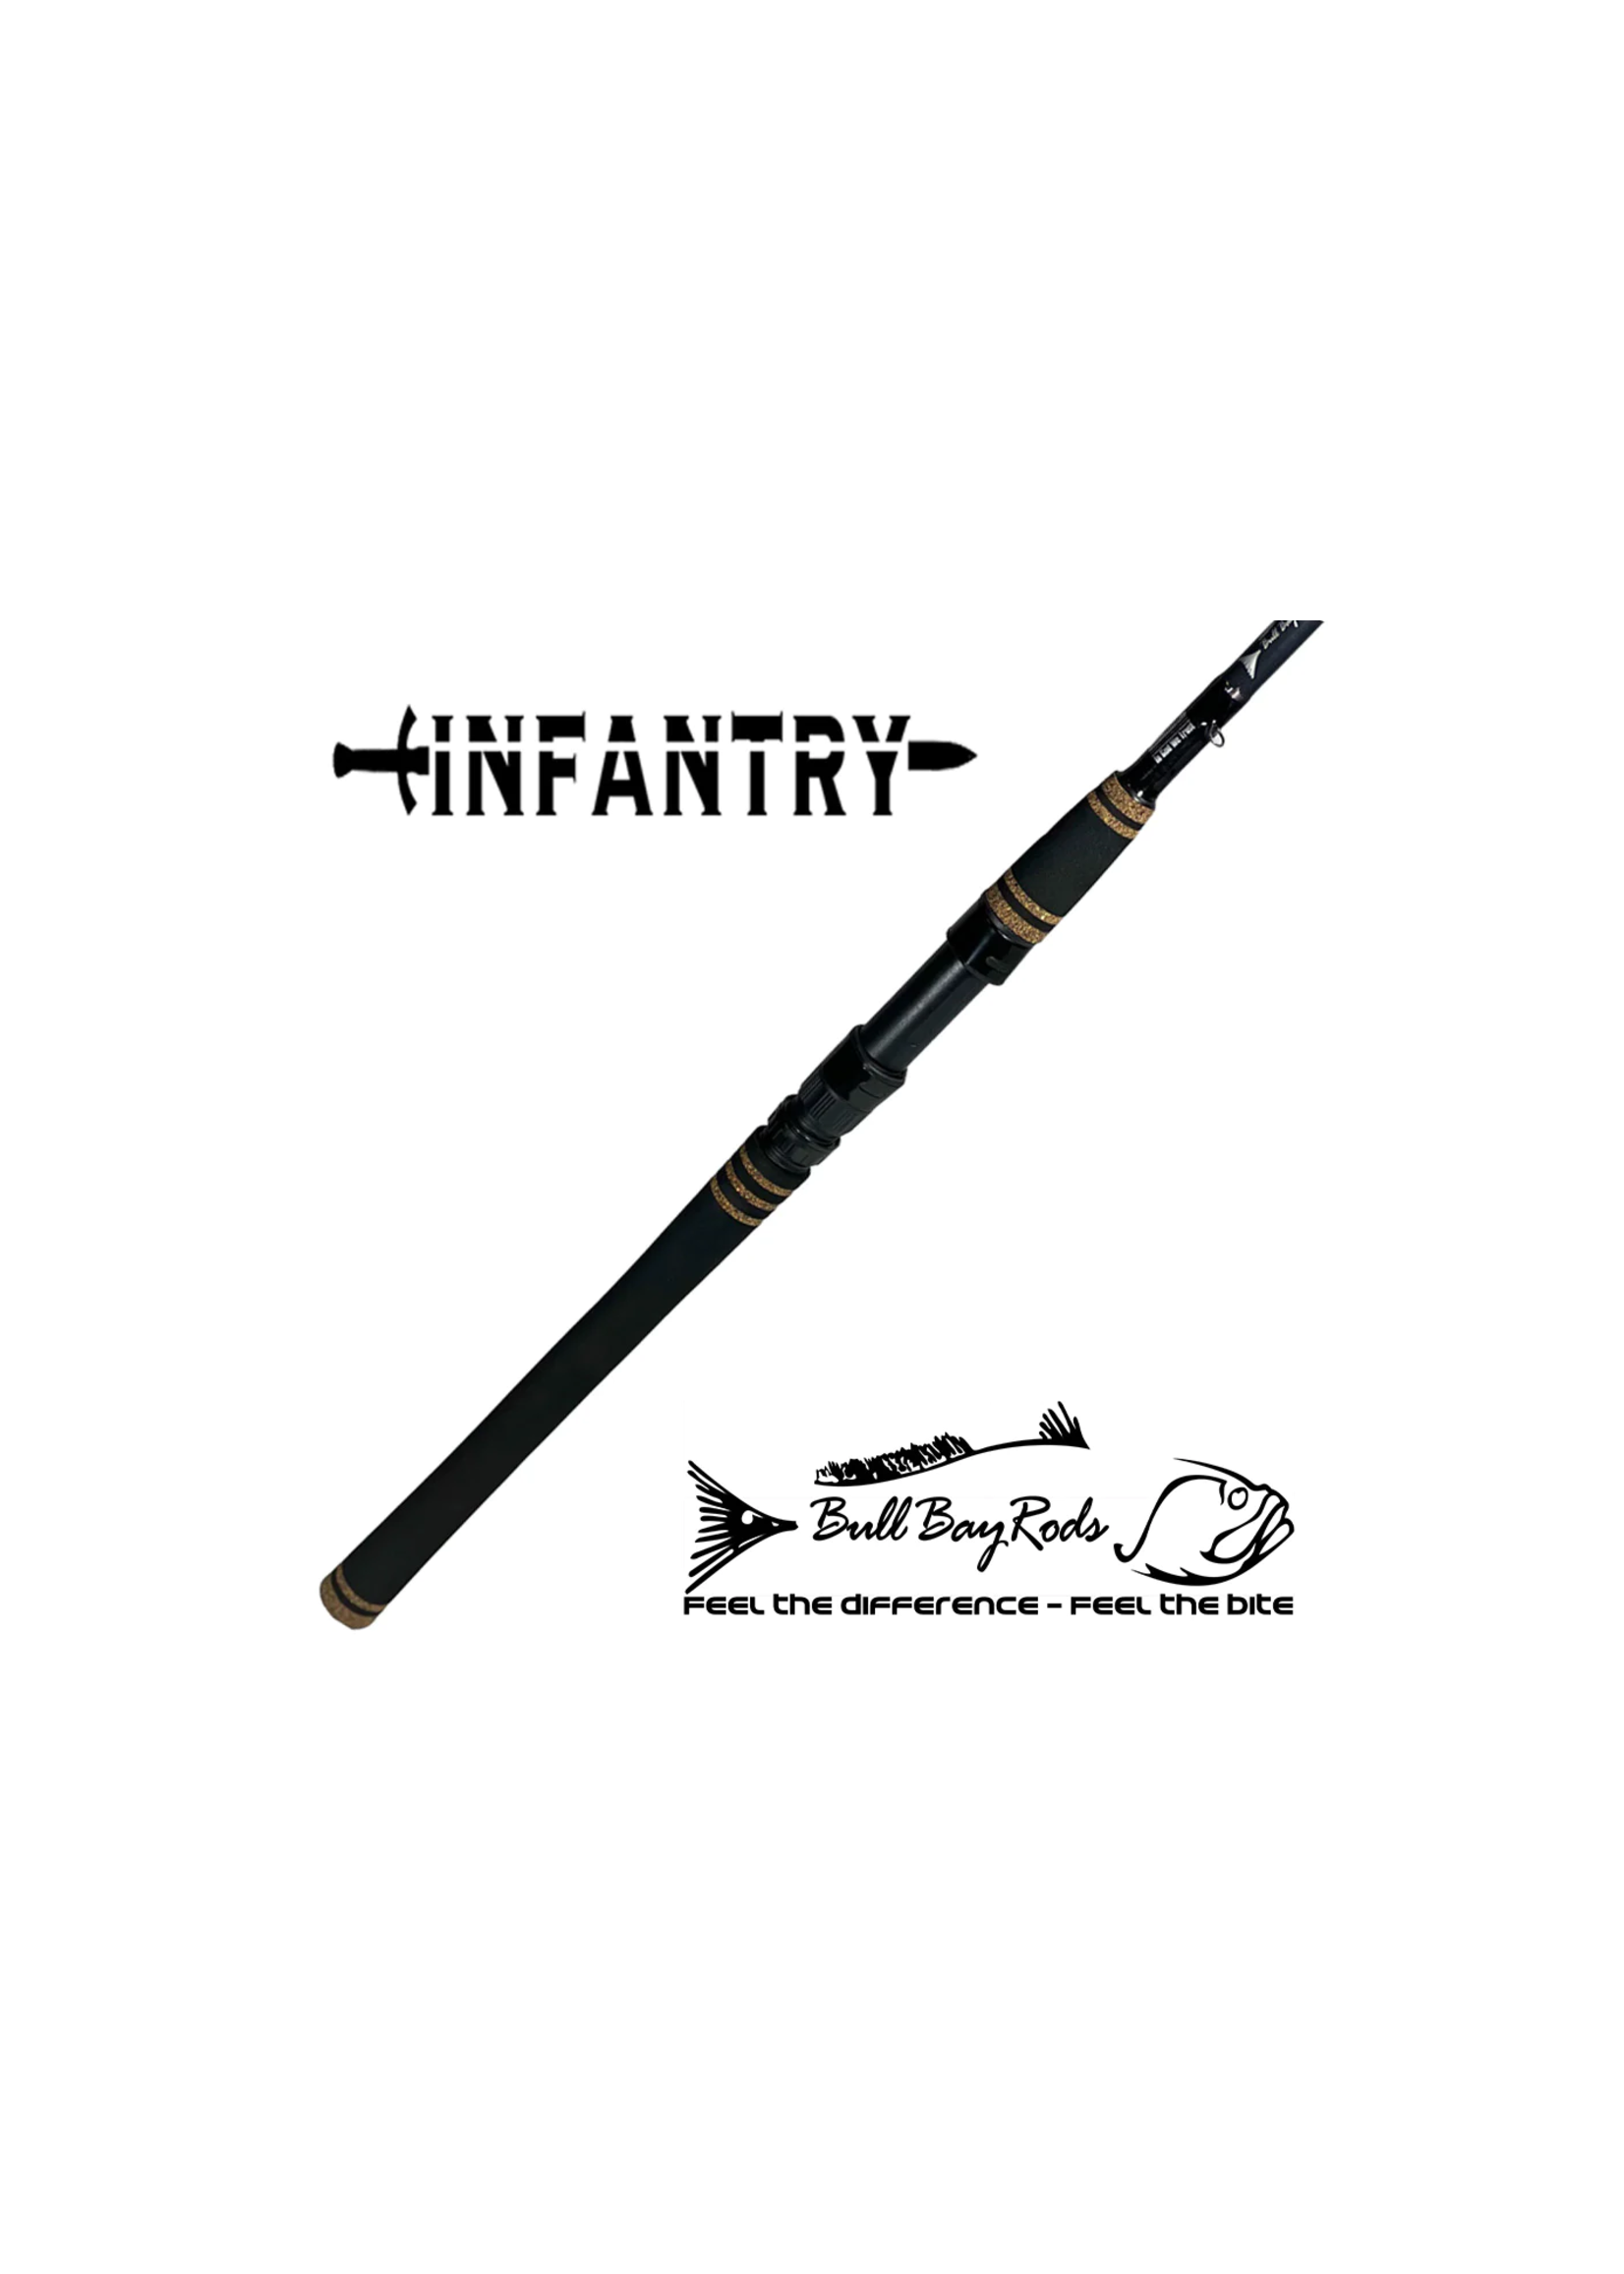 Bull Bay Bull Bay Infantry Rod 7' 8-17# MH Spinning Rod